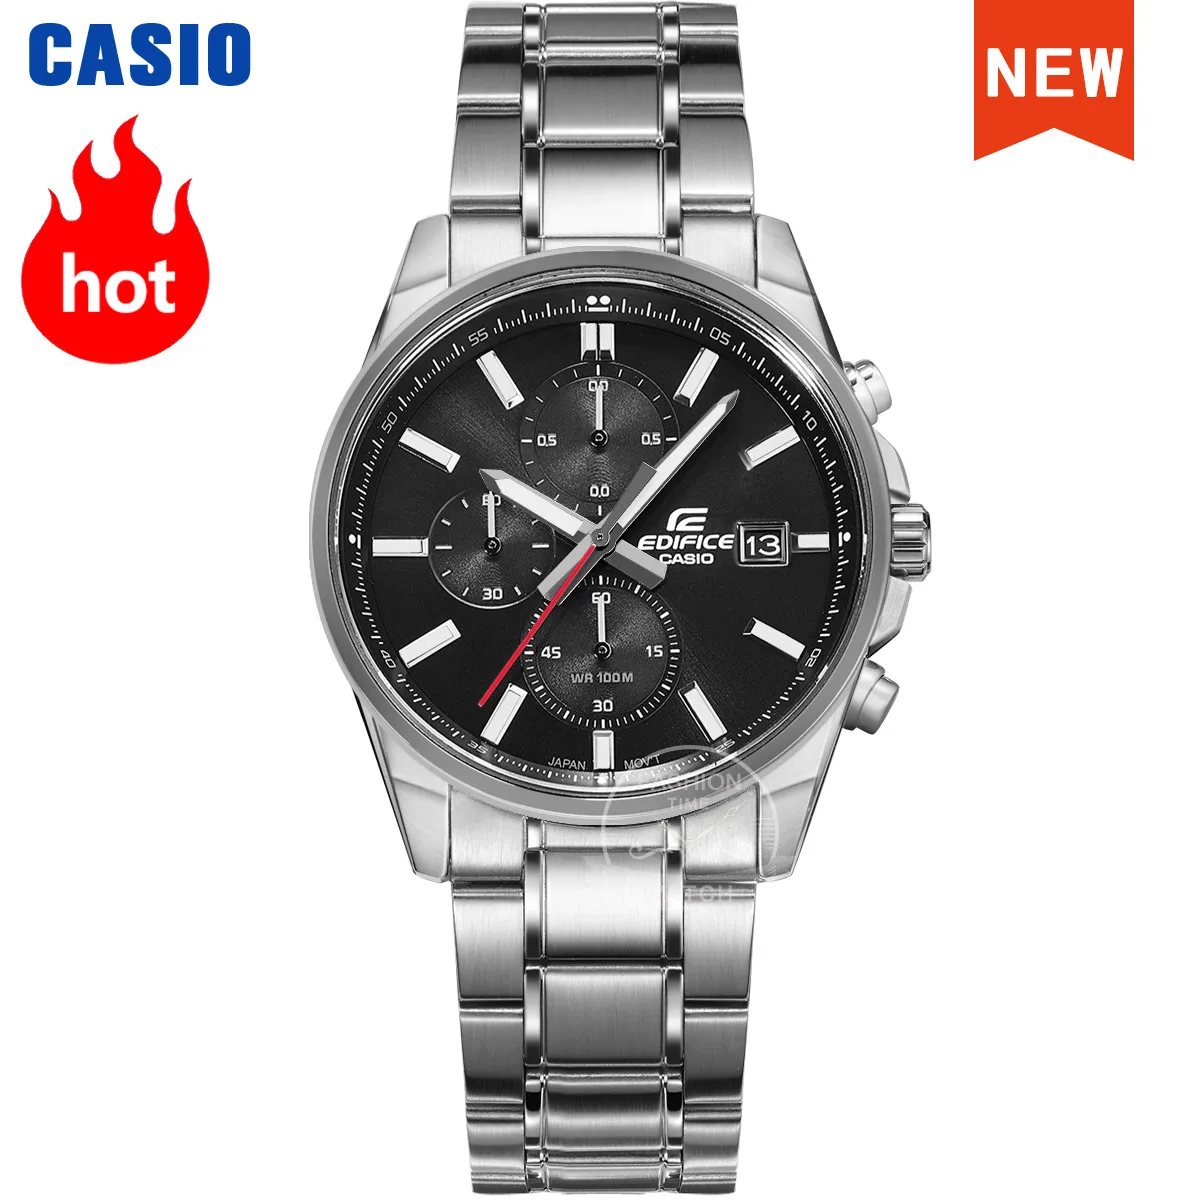 Casio Edifice-reloj de cuarzo deportivo para hombre, cronógrafo de lujo con temporizador, resistente al agua, 100m, EFV-610D-1A